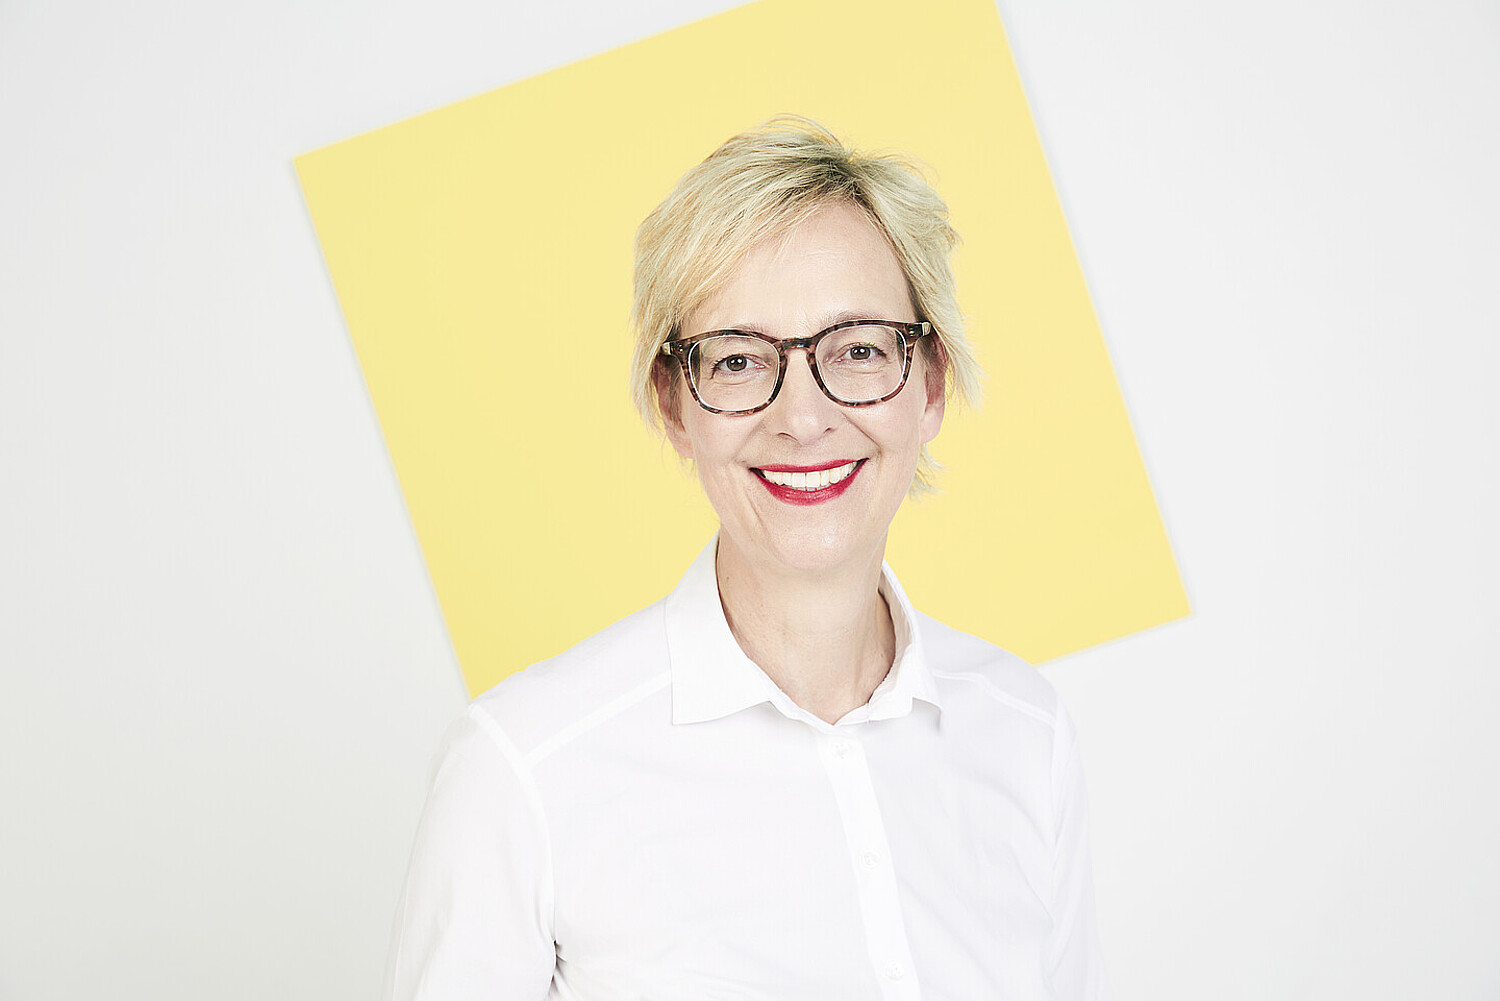 Porträt von Christine Regitz vor einer gelben quadratischen Fläche